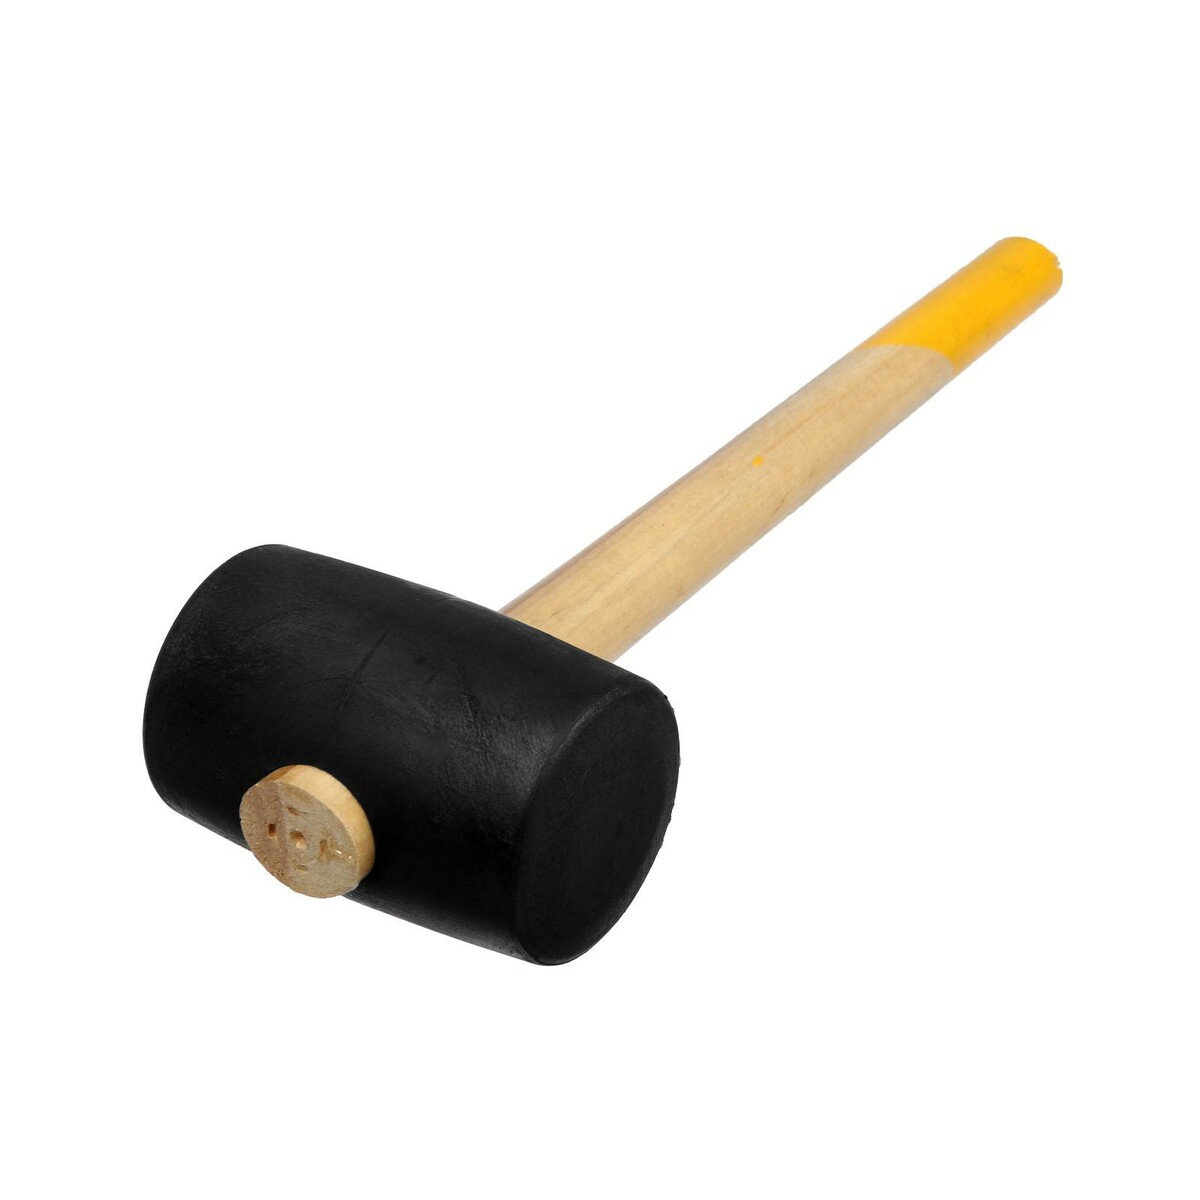 Киянка тундра, деревянная рукоятка, черная резина, 65 мм, 680 г киянка тундра деревянная рукоятка черная резина 225 г